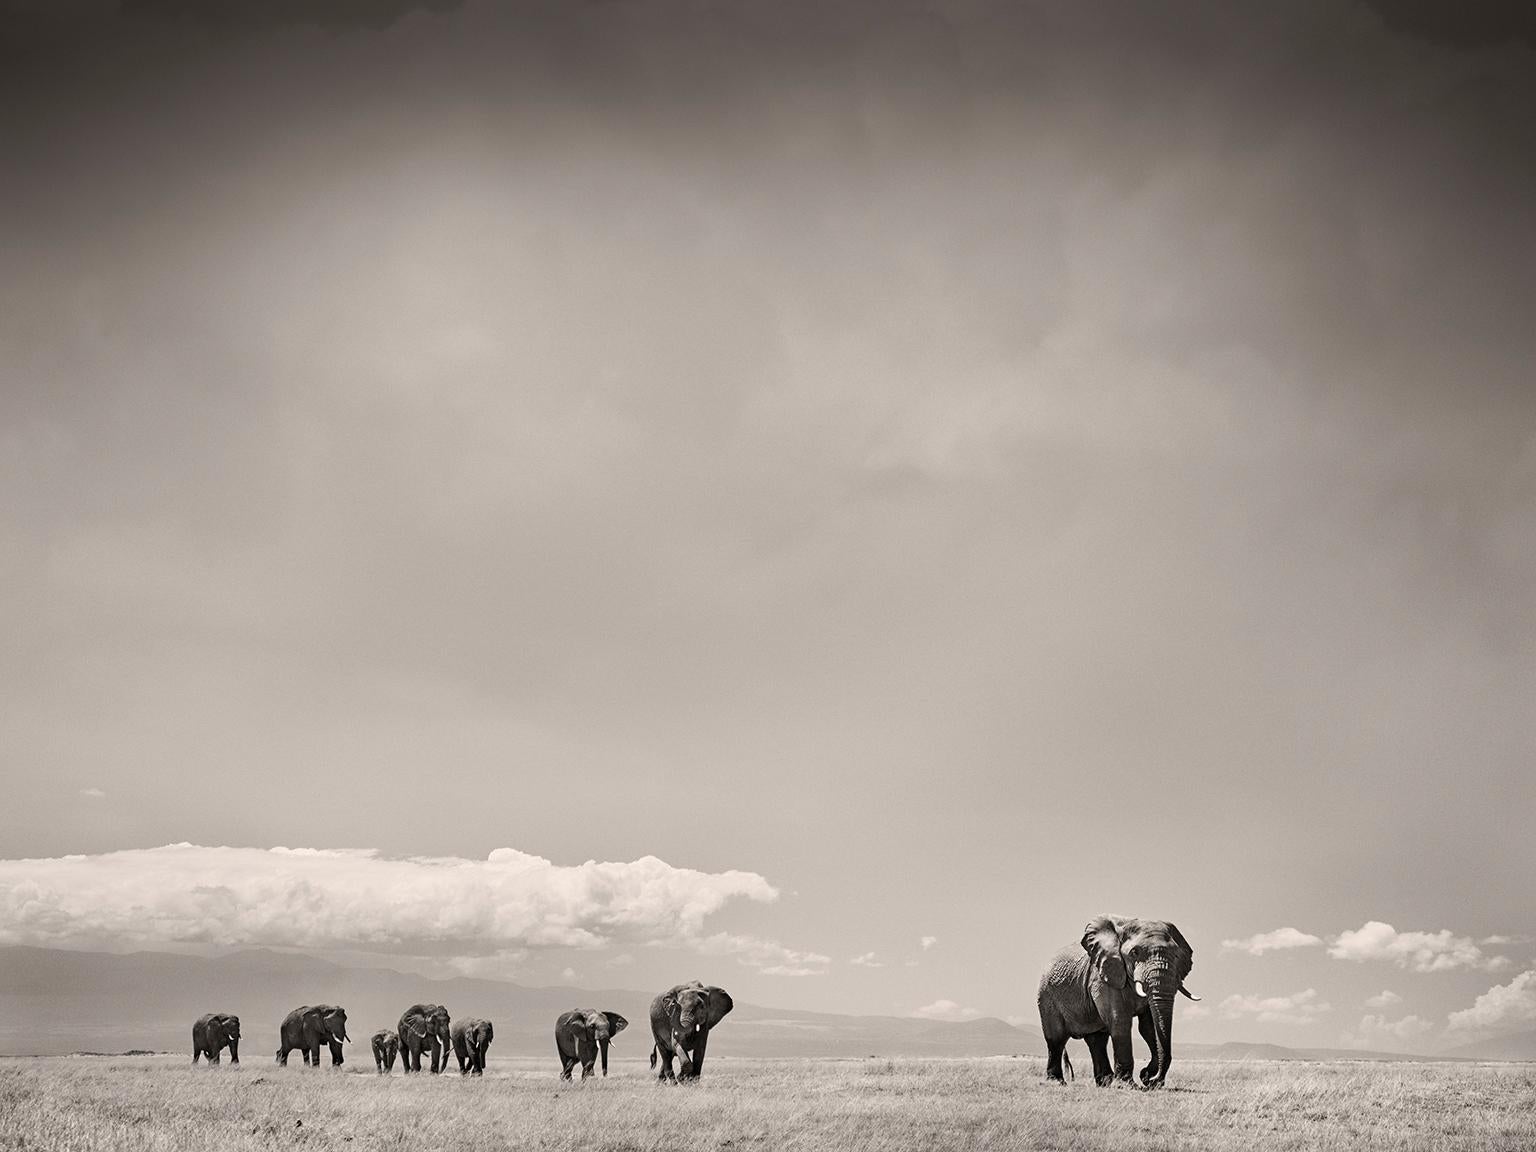 Landscape Photograph Joachim Schmeisser - Le matriarche, l'éléphant, l'animal, la faune, la photographie en noir et blanc